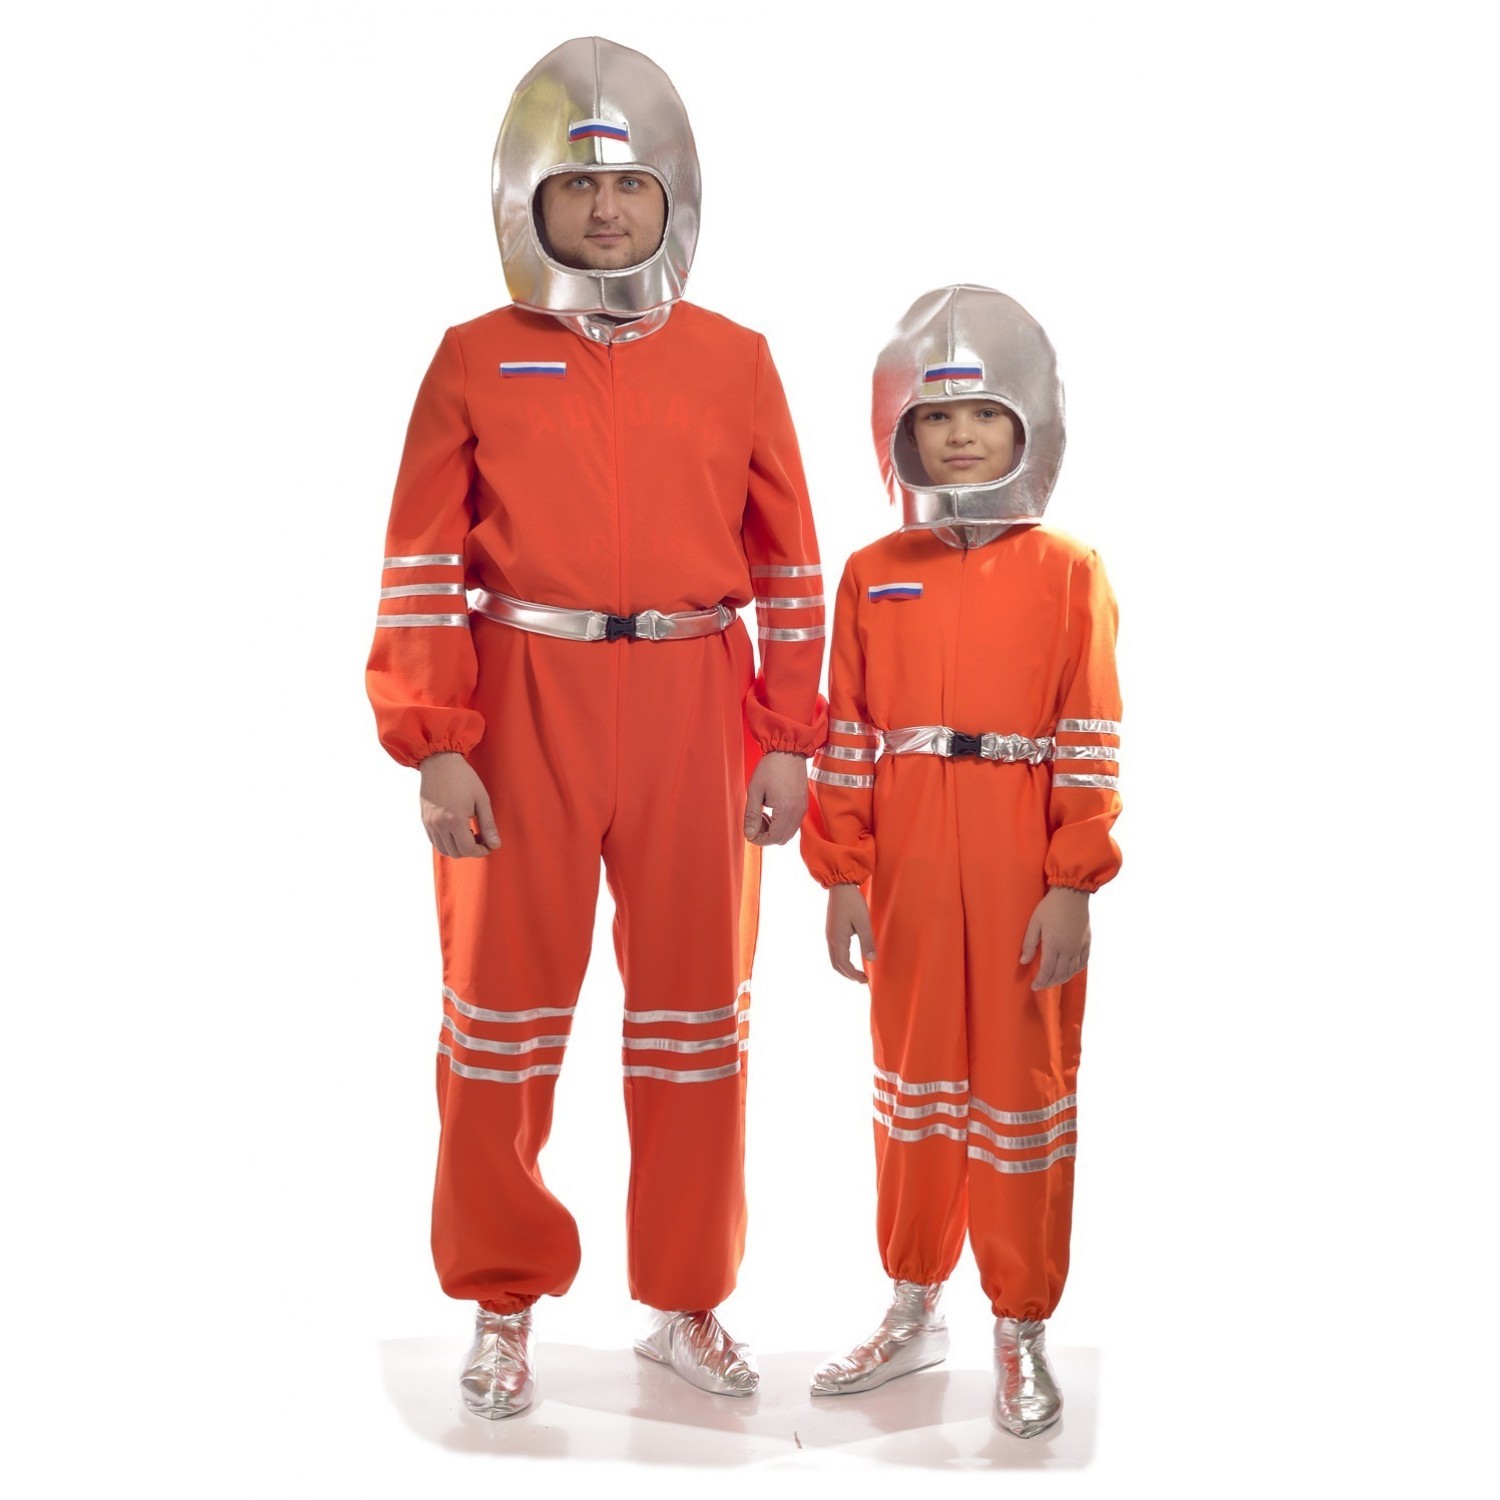 Купить Костюм Космонавта для детей в магазине развивающих игрушек Детский сад